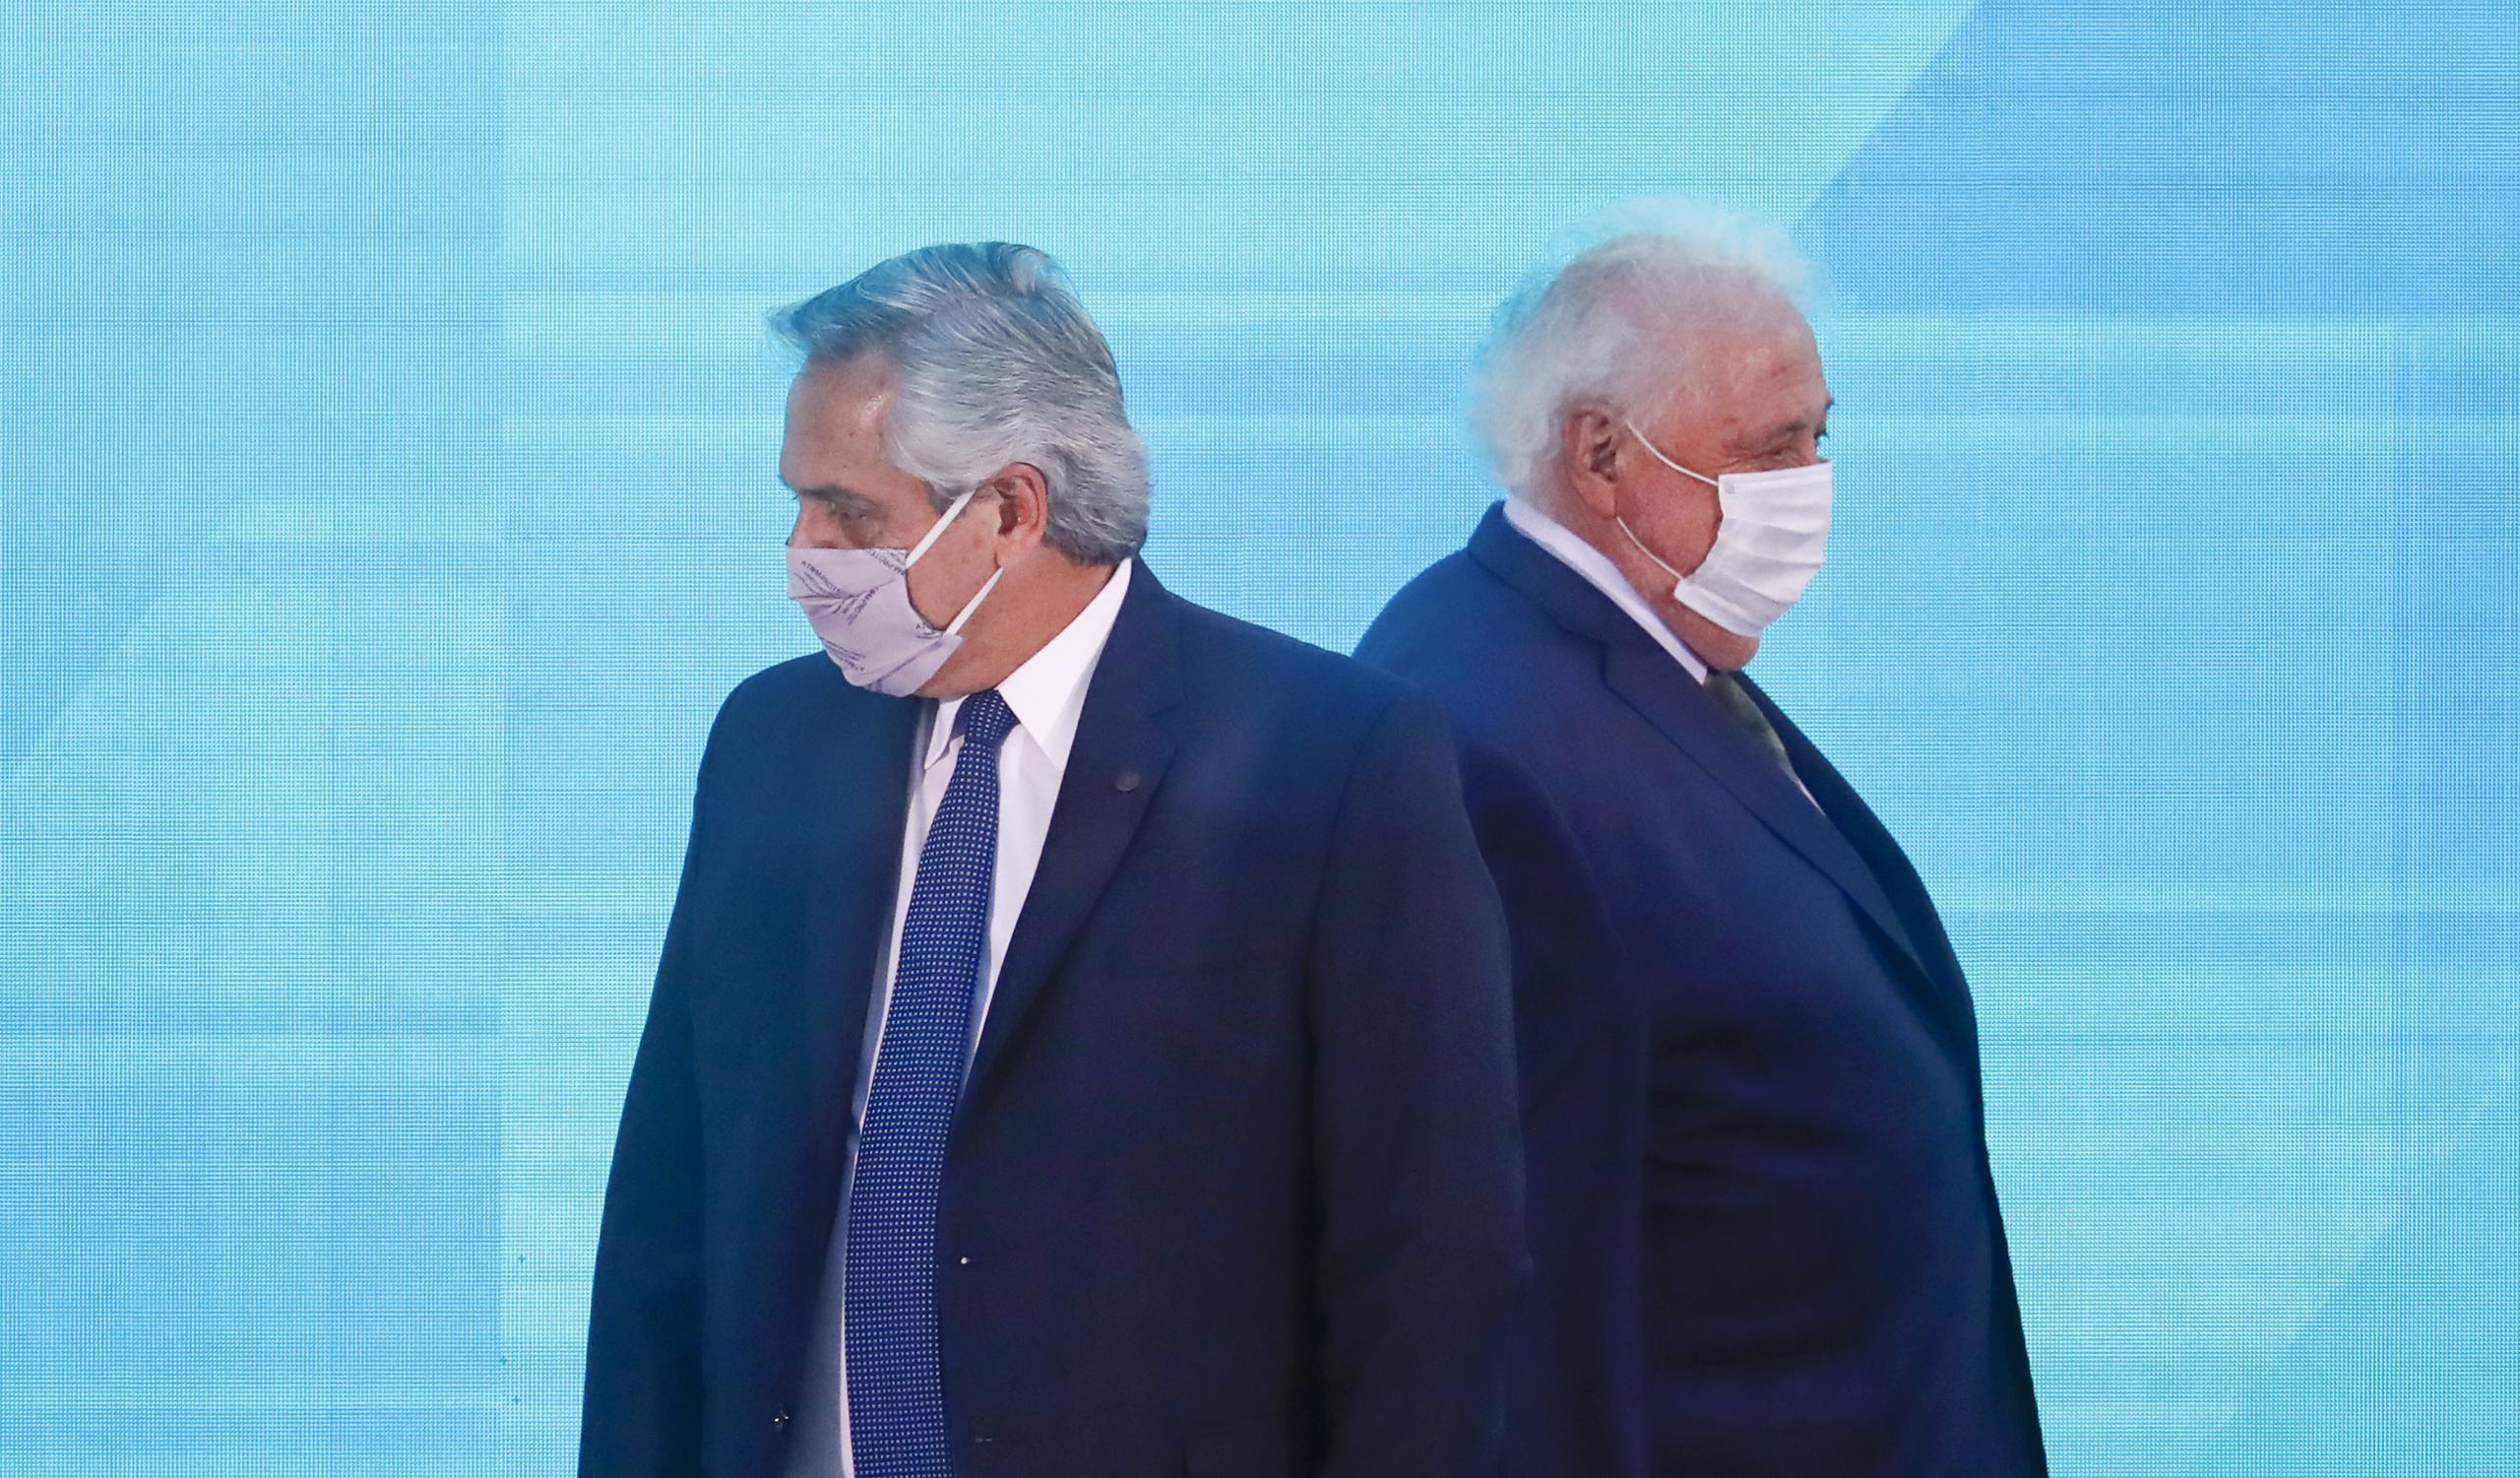 El presidente argentino Alberto Fernández (izq.) le pidió hoy la renuncia a su ministro de Salud, Ginés González García.